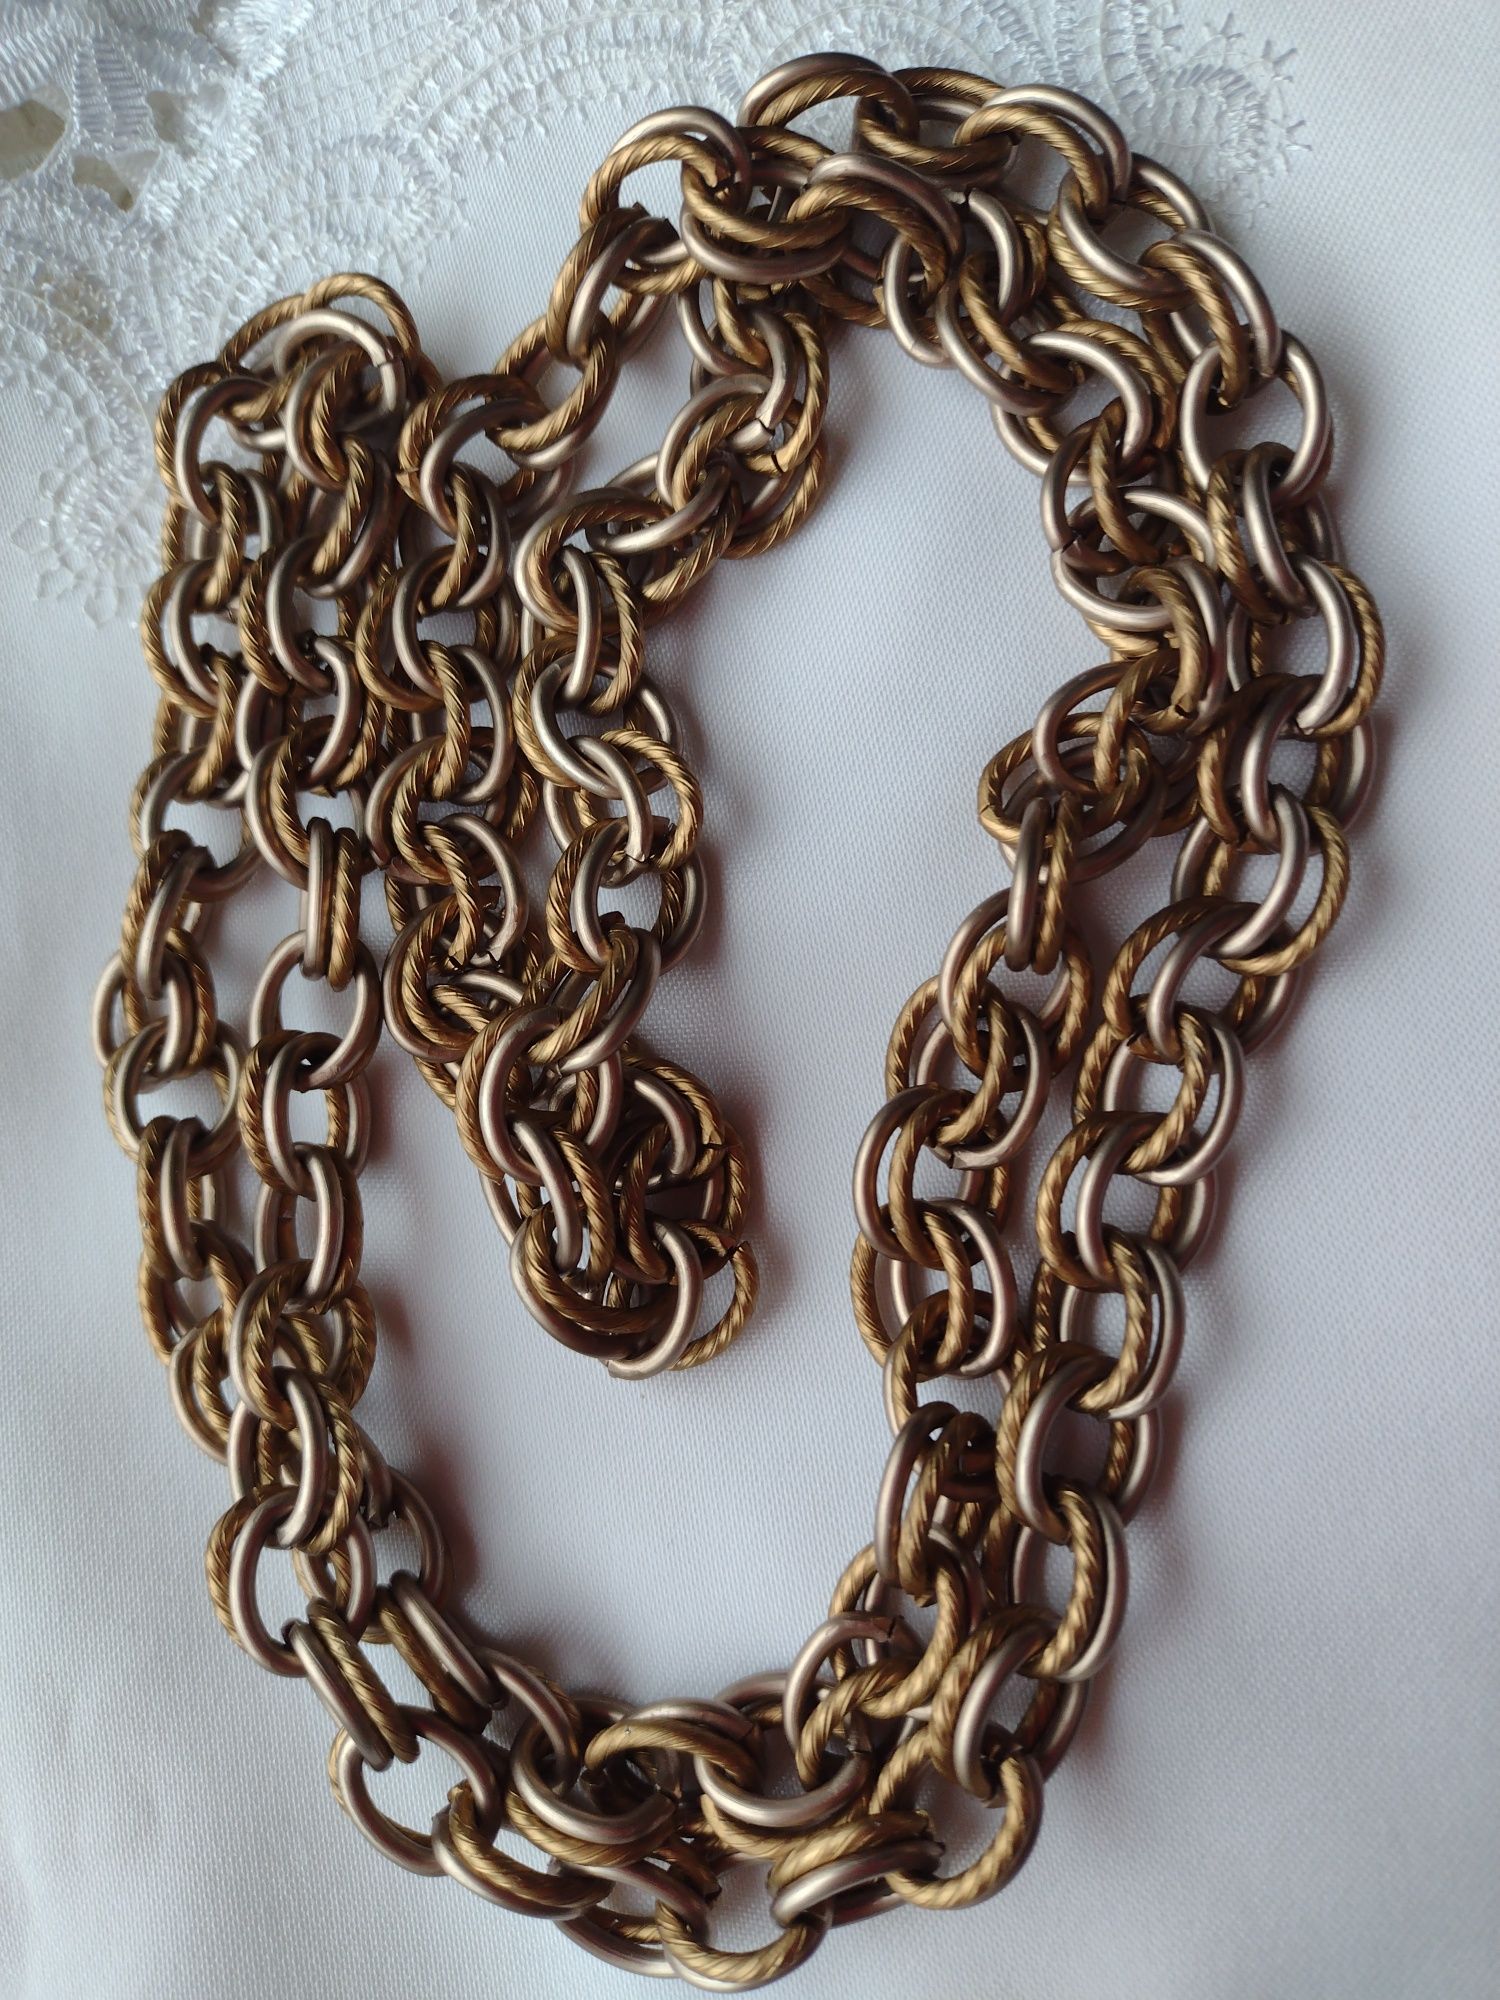 łańcuch naszyjnik 1m damski męski odcienie brązu starego złota